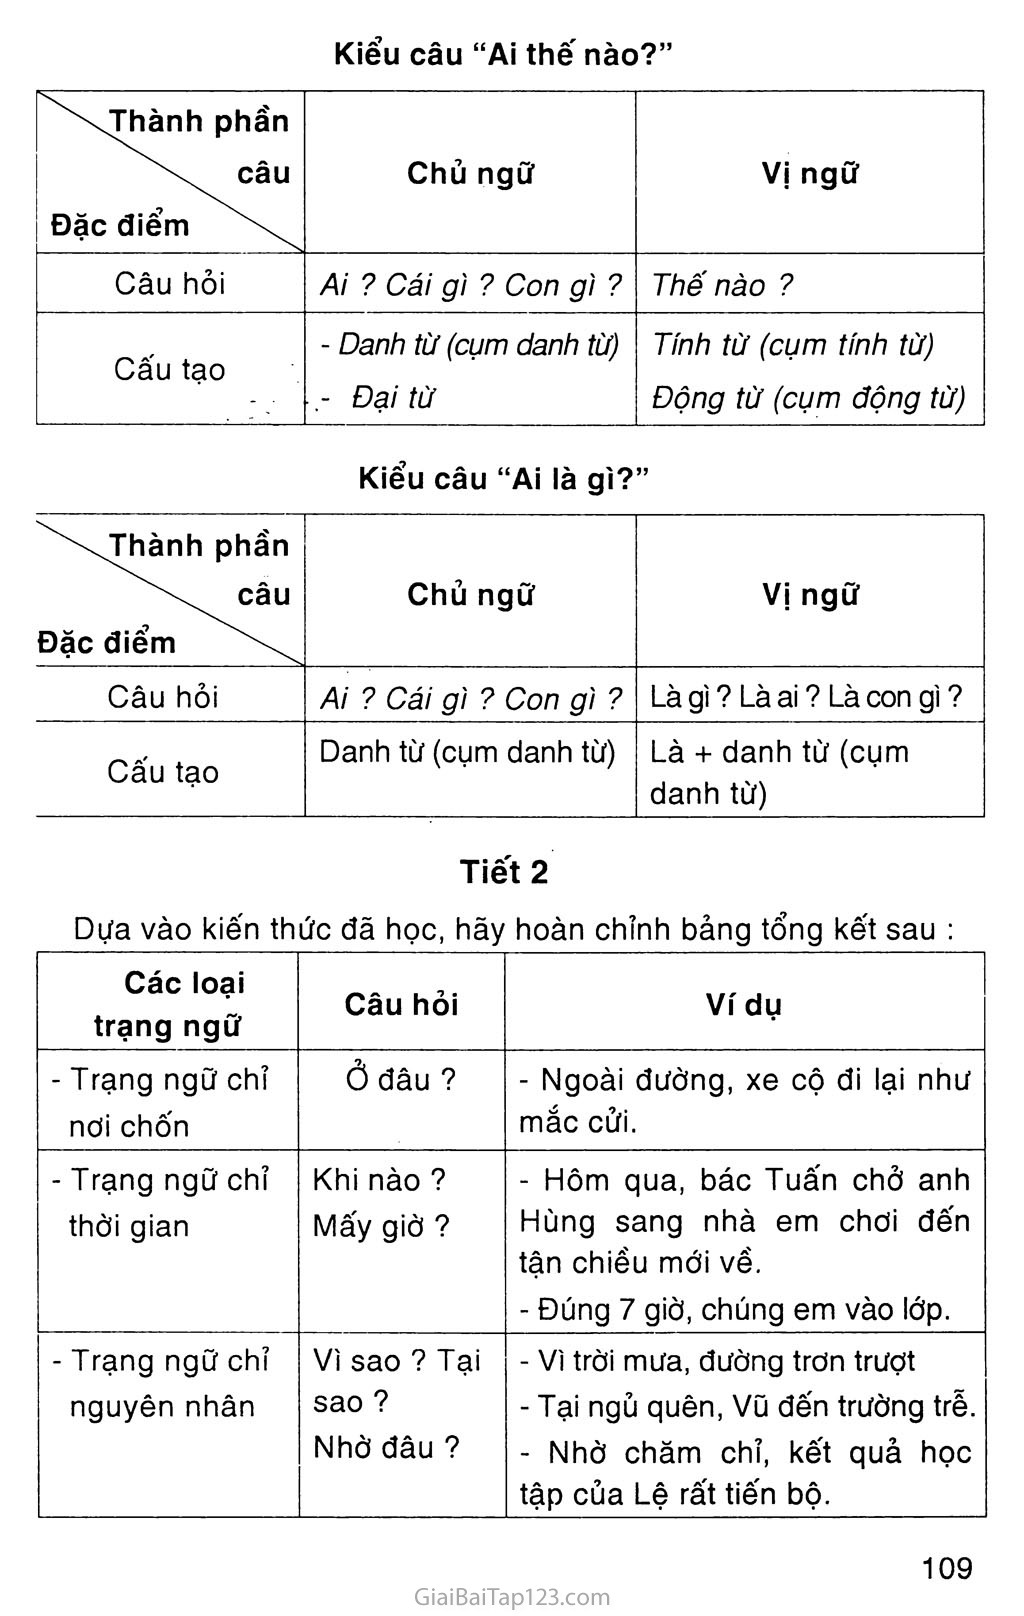 Giải vở bài tập Tiếng Việt lớp 5 tập 2 Tuần 35